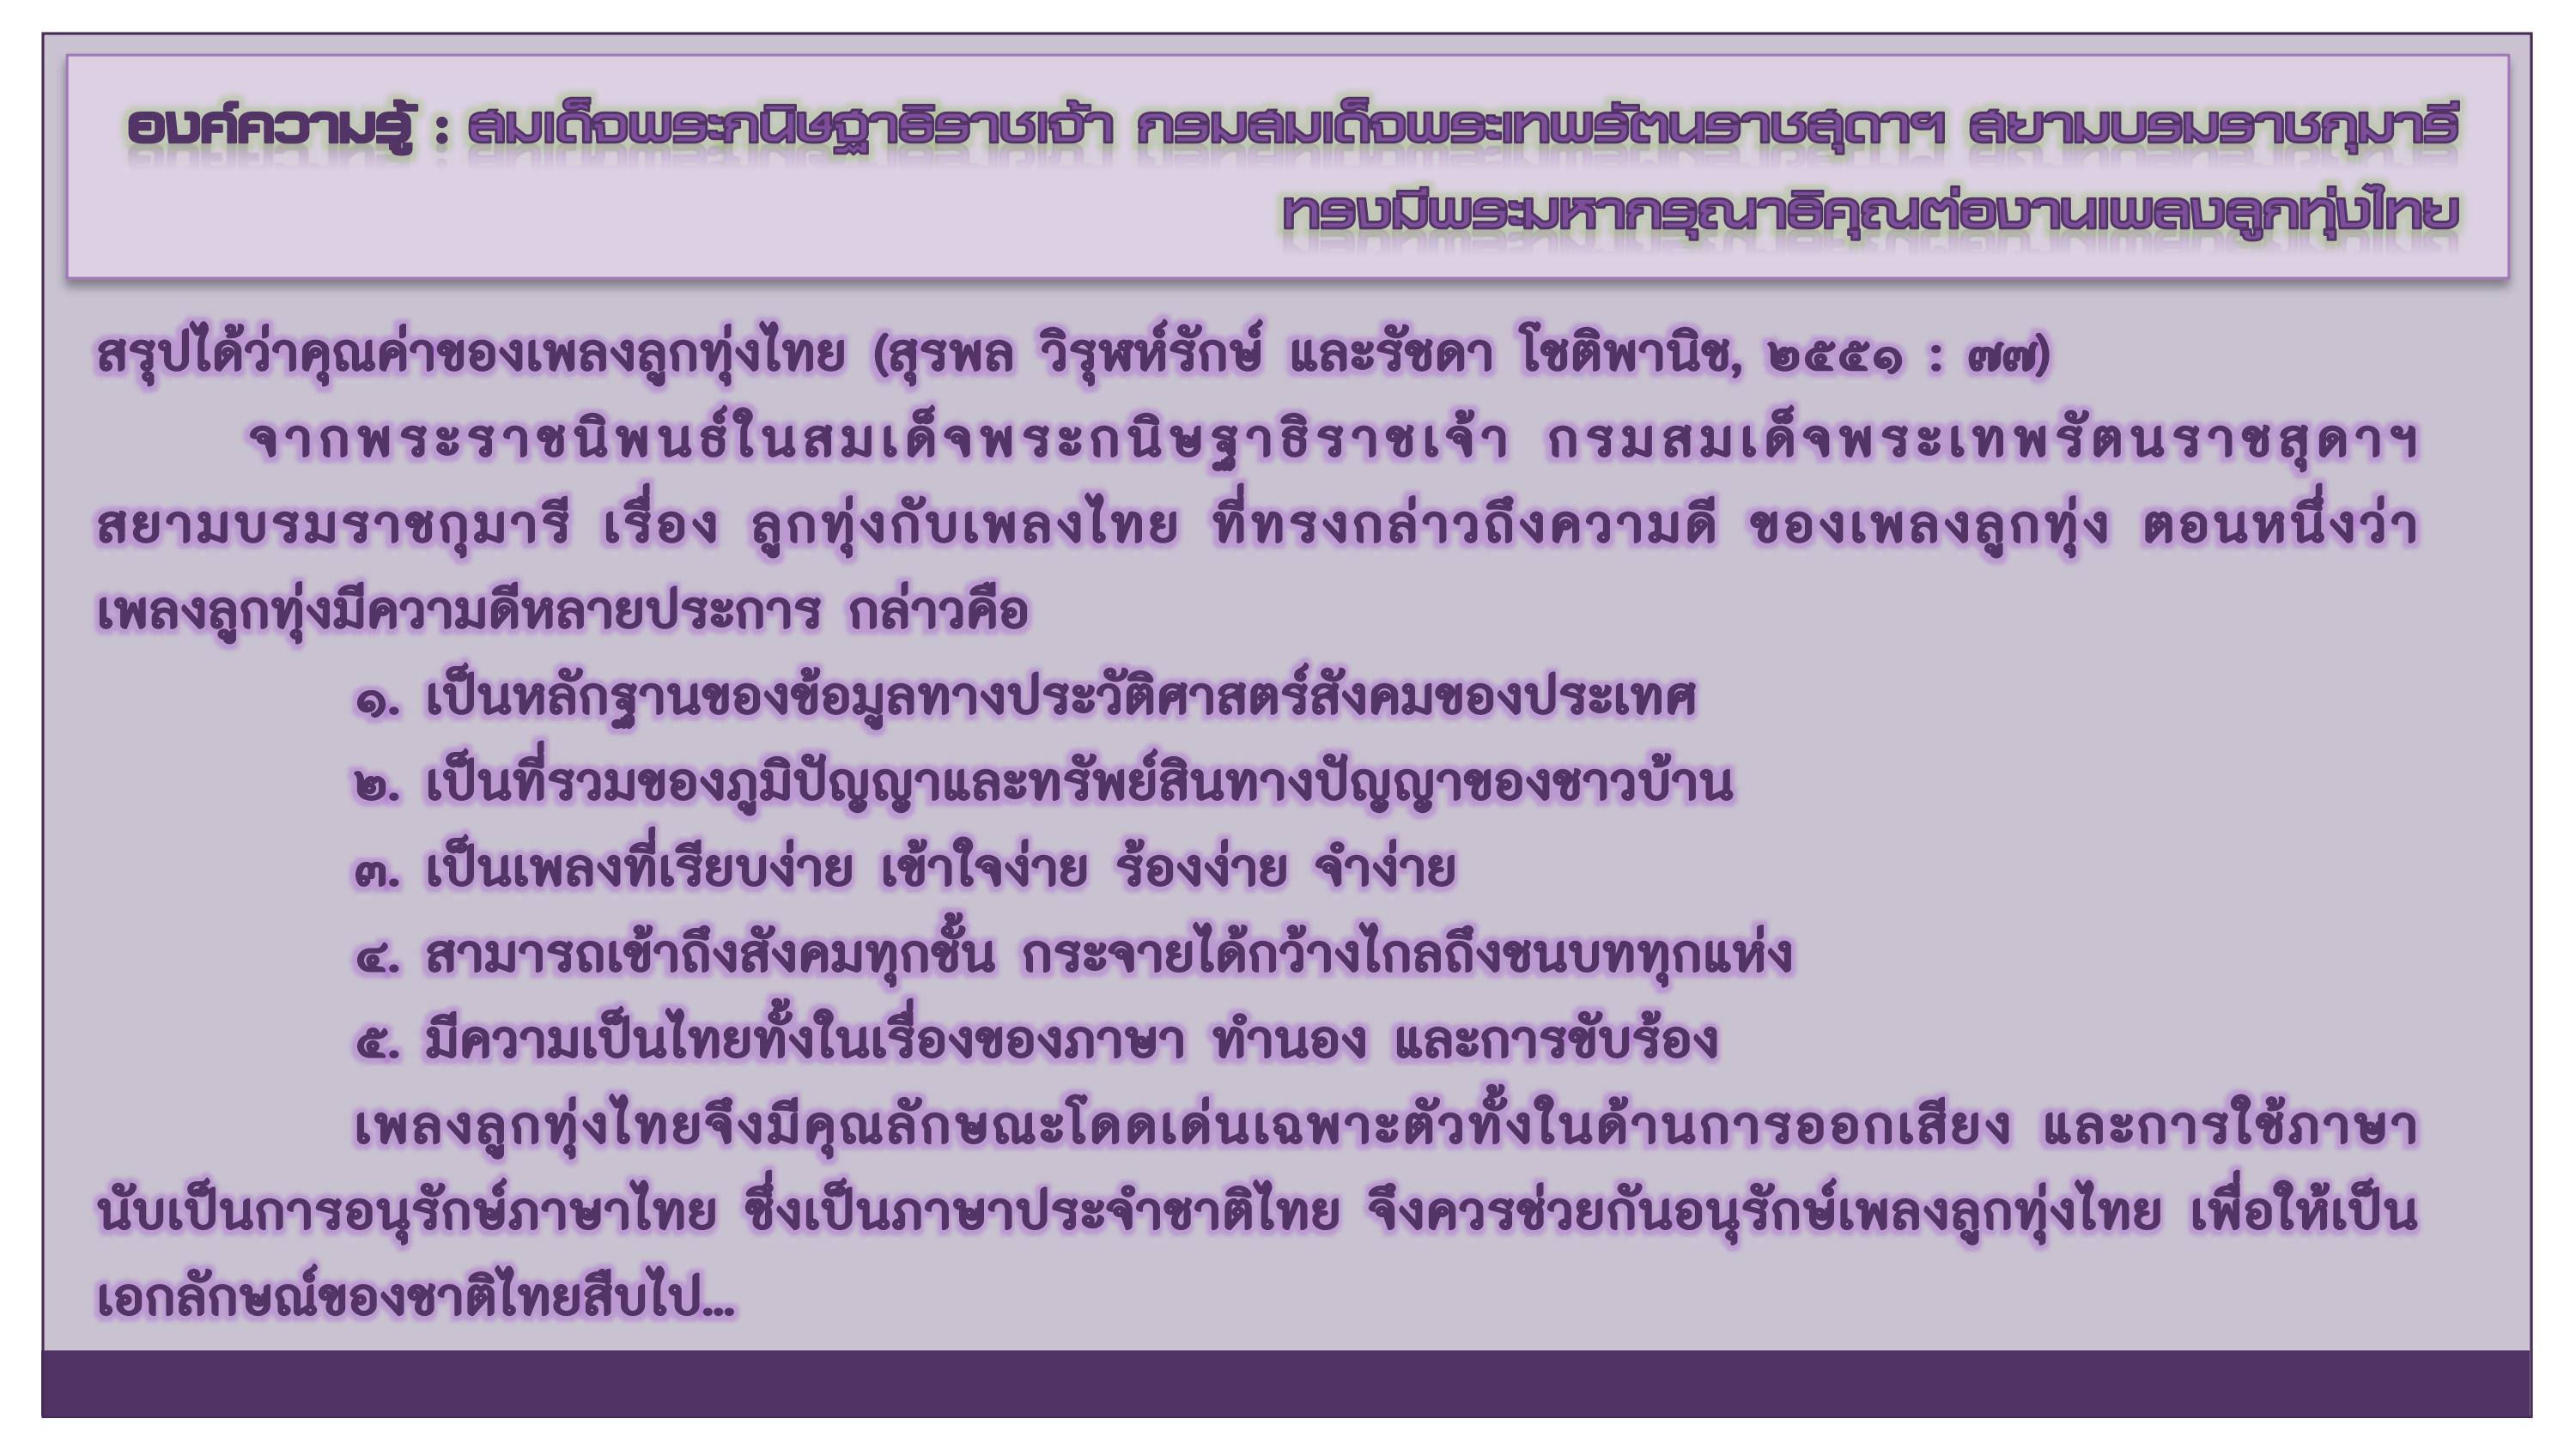 องค์ความรู้ : สมเด็จพระกนิษฐาธิราชเจ้า กรมสมเด็จพระเทพรัตนราชสุดาฯ สยามบรมราชกุมารี ทรงมีพระมหากรุณาธิคุณต่องานเพลงลูกทุ่งไทย